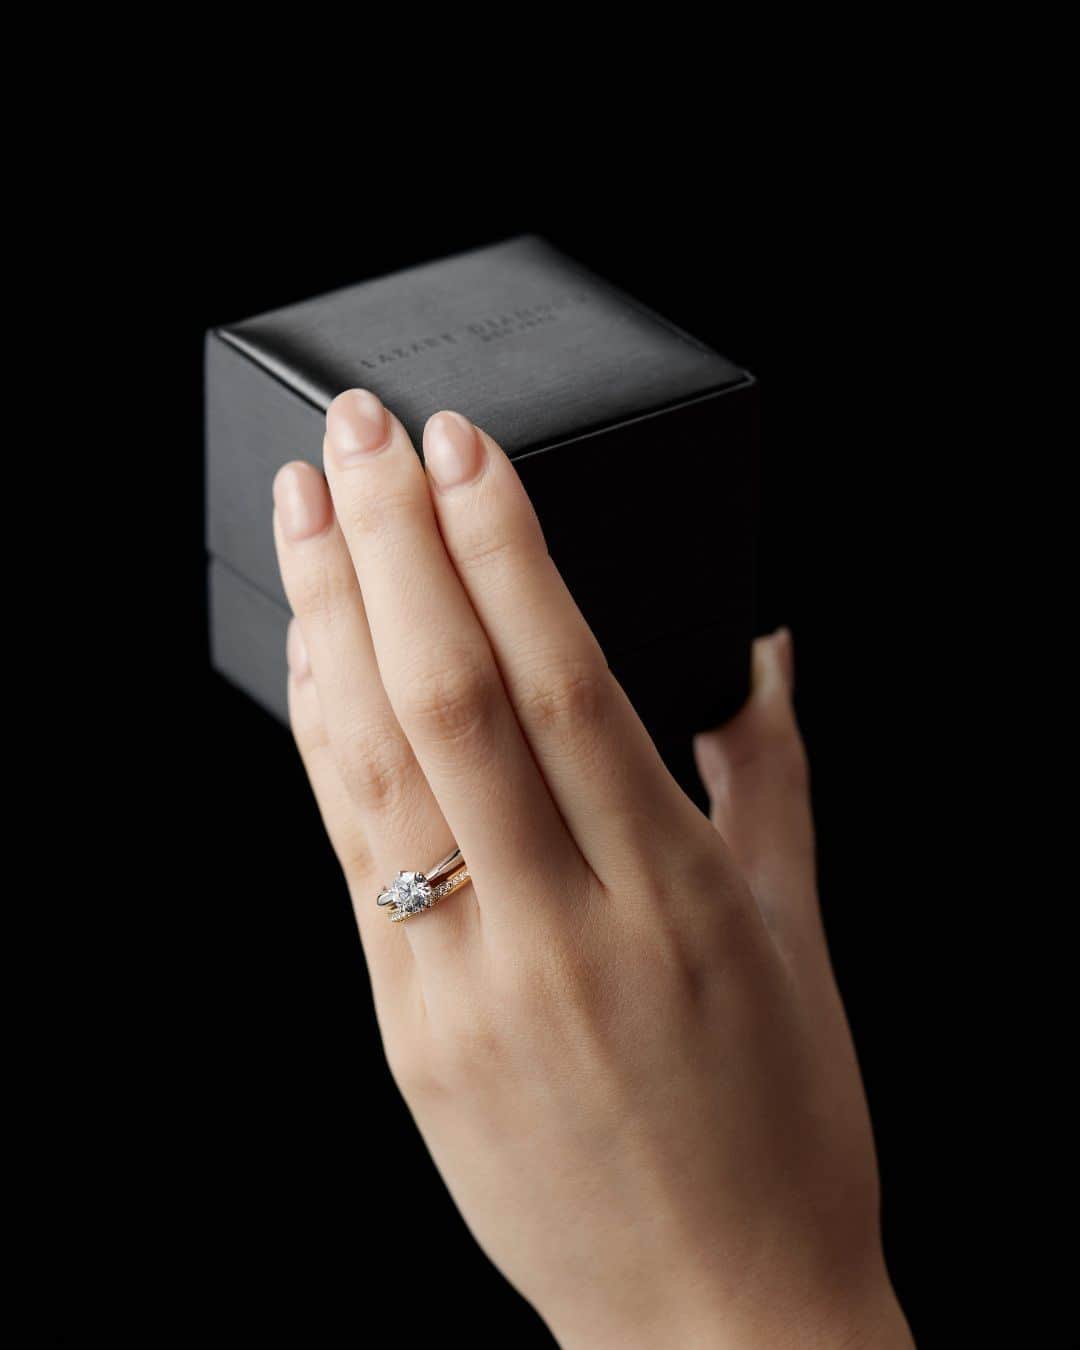 ラザール ダイヤモンド ブティック公式 | 婚約・結婚指輪のインスタグラム：「数あるジュエリーブランドの中でも、 “世界三大ダイヤモンドカッターズブランド” のひとつと称される ラザール ダイヤモンド。  ダイヤモンドの輝きに徹底的にこだわり、 歪みのない稀少な正八面体のオクタヘドロンを中心に、 厳選した原石のみを使用。  この美しさを秘めた原石に、理想的なカットである「アイディアルメイクを施し、最高峰の美しい輝きを引き出すことに徹底的にこだわっています。  無限に続く奇跡の輝きに酔いしれて。  ＜婚約指輪＞CARILLON ＜結婚指輪＞APPLAUSE YG  #lazarediamond #ラザールダイヤモンド #婚約指輪 #エンゲージリング #結婚指輪 #マリッジリング #NEWYORK #NYC #ダイヤモンド #ダイヤモンドリング #ブライダルリング #ブライダルリング専門店」